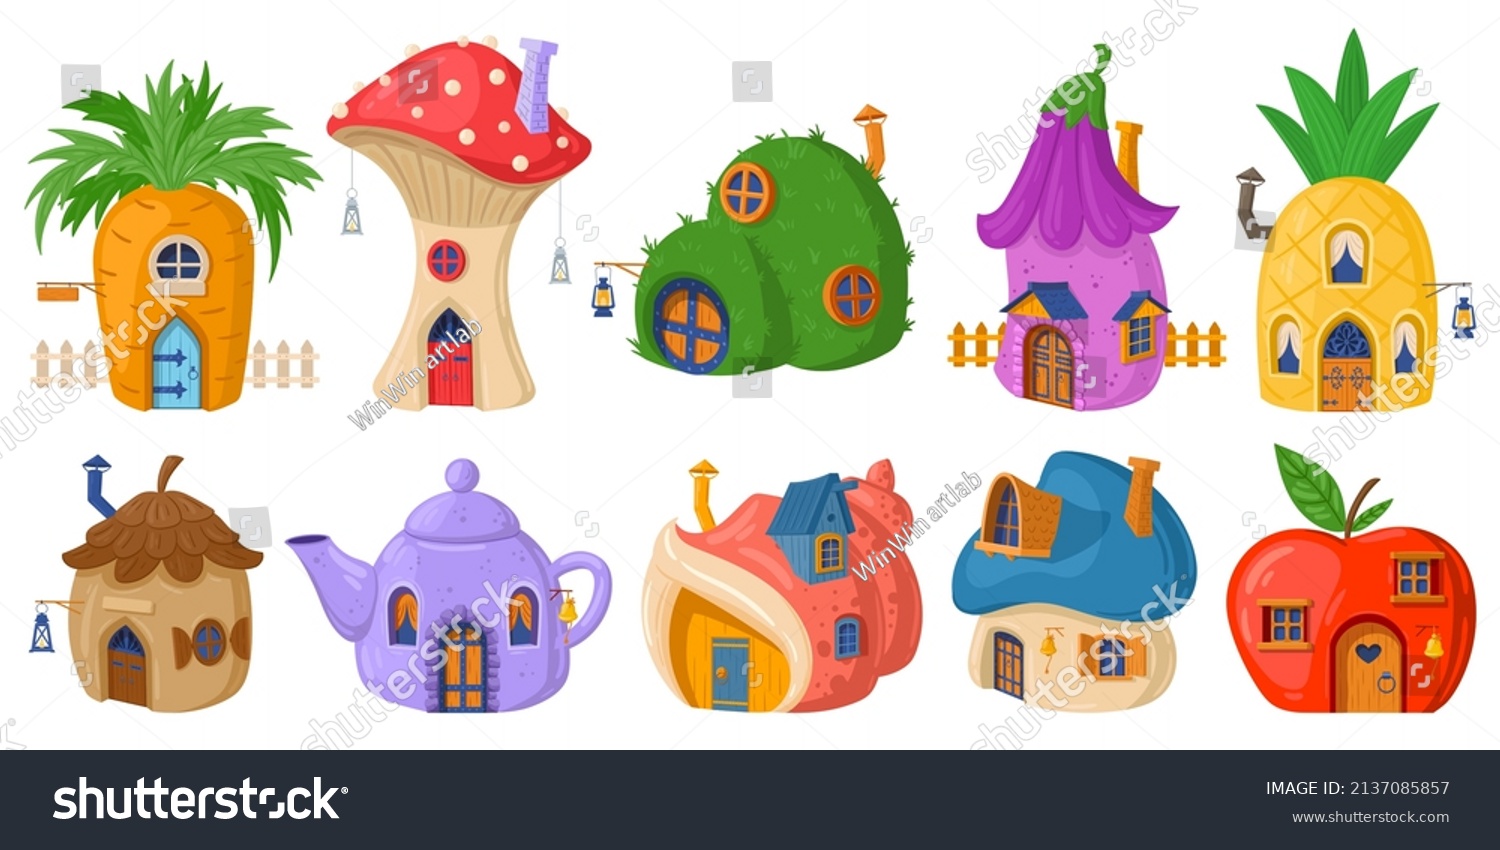 SVG of Fairy mushroom house, cartoon fairytale tiny forest house. Fairytale plants, gnomes or hobbit houses vector illustration set. Fantasy cute buildings. Mushroom colorful cartoon magical svg